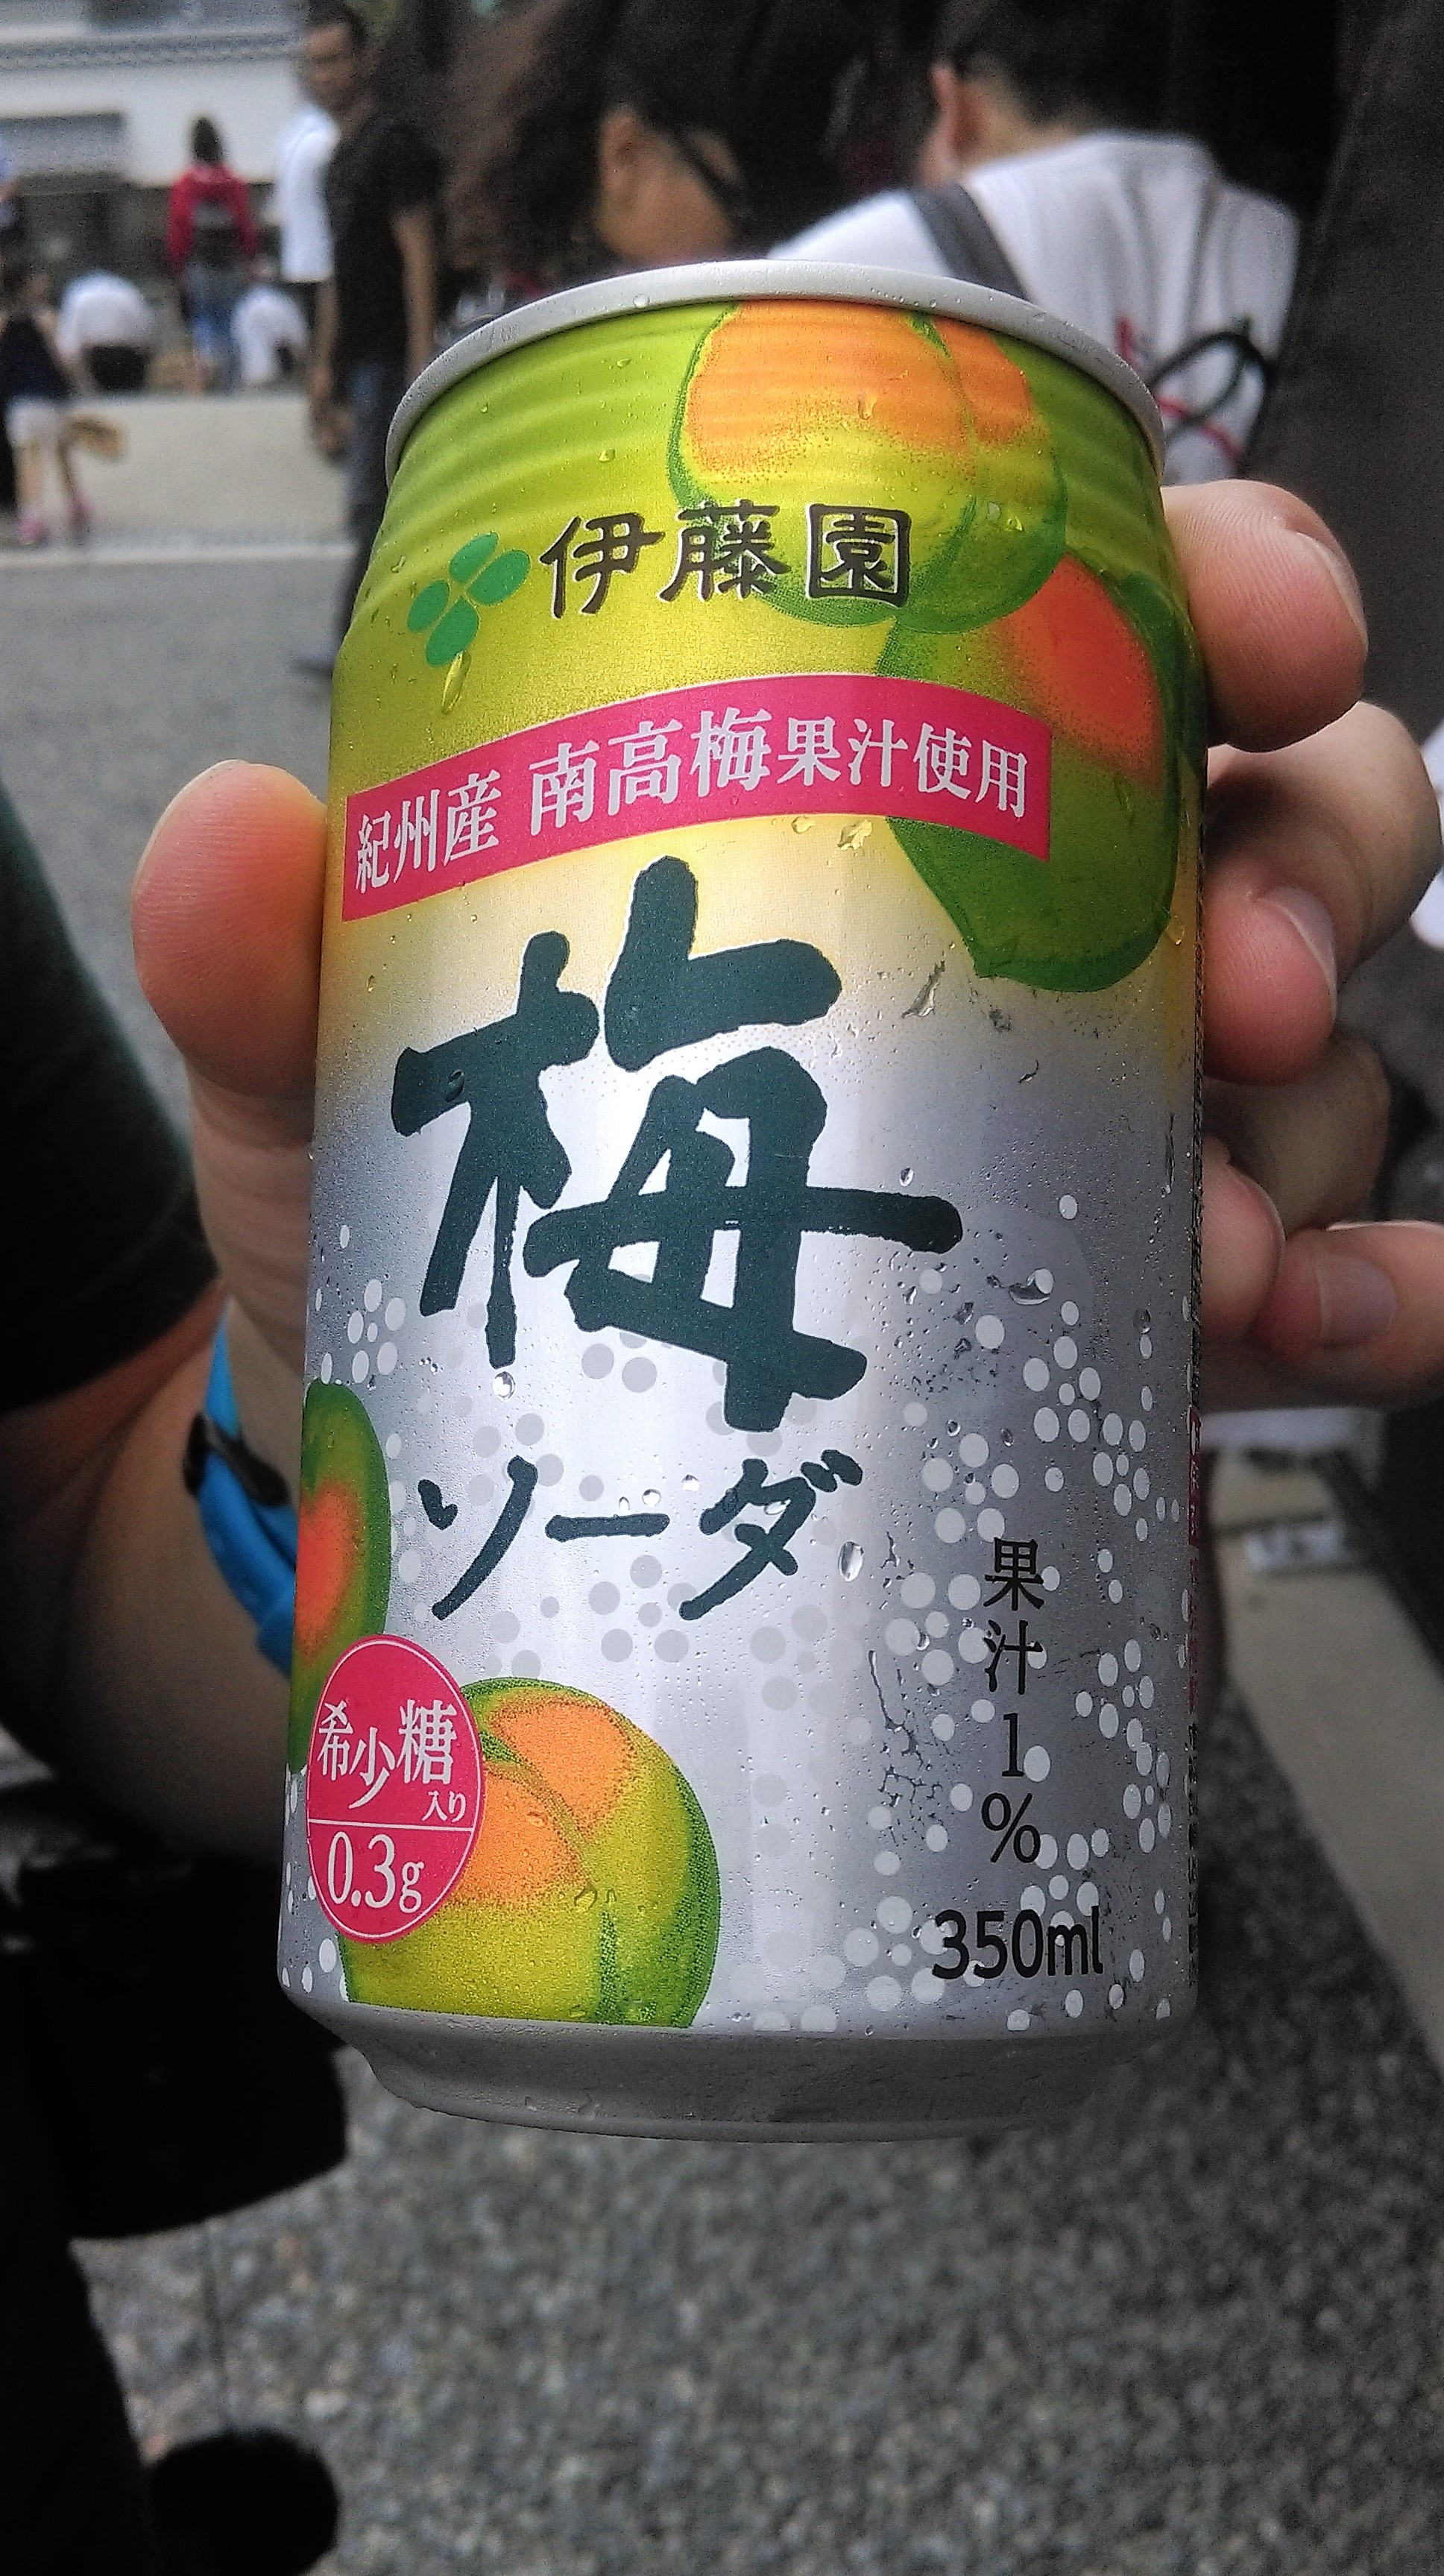 kyoto drink drankje supersweet cherries kersensmaak